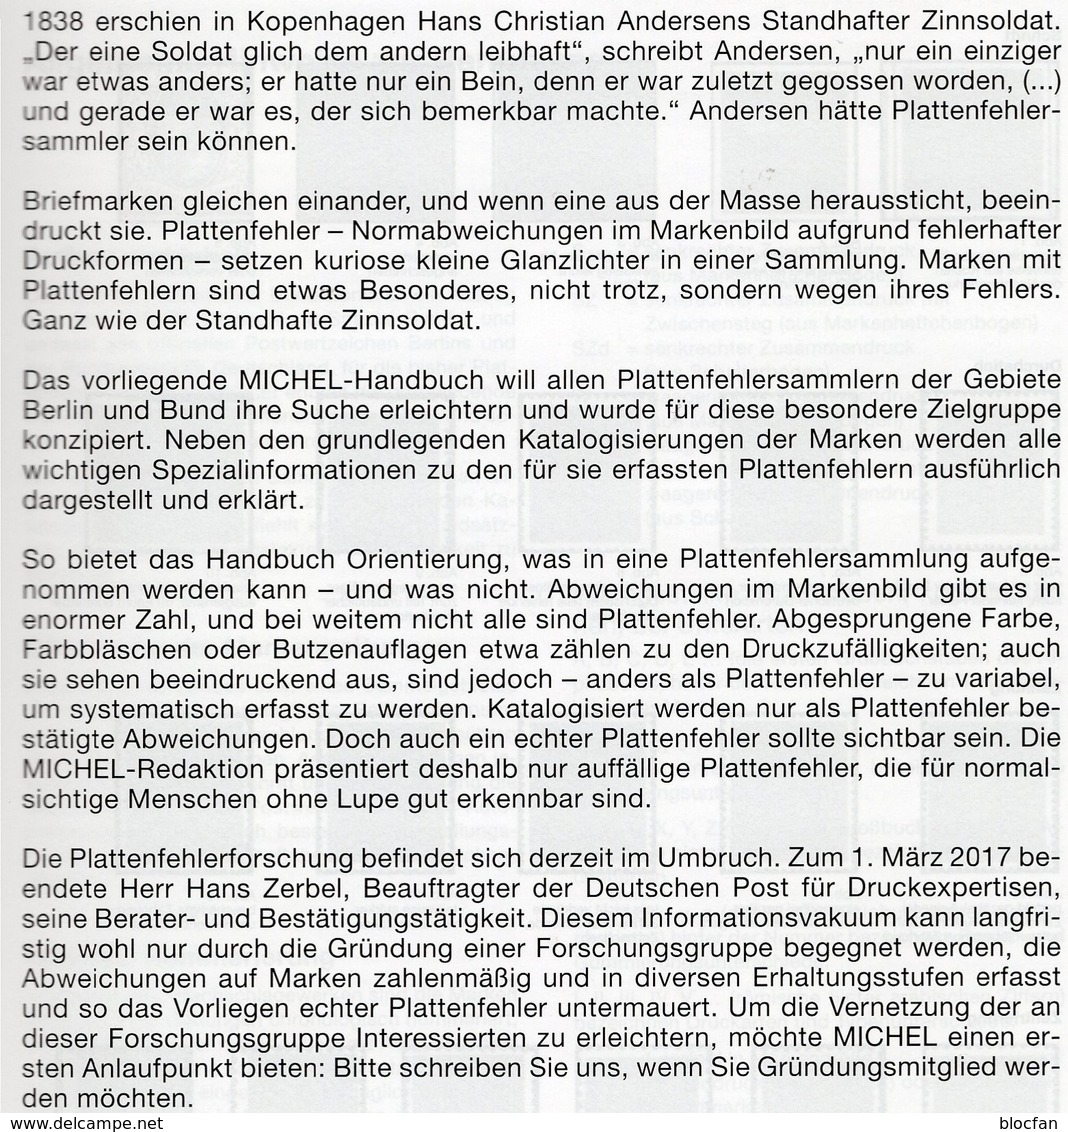 1.Auflage MICHEL Plattenfehler BUND Berlin Neu 2018 40€ Katalog Fehler Auf Briefmarken Error Stamps Catalog Germany - Ed. Originali